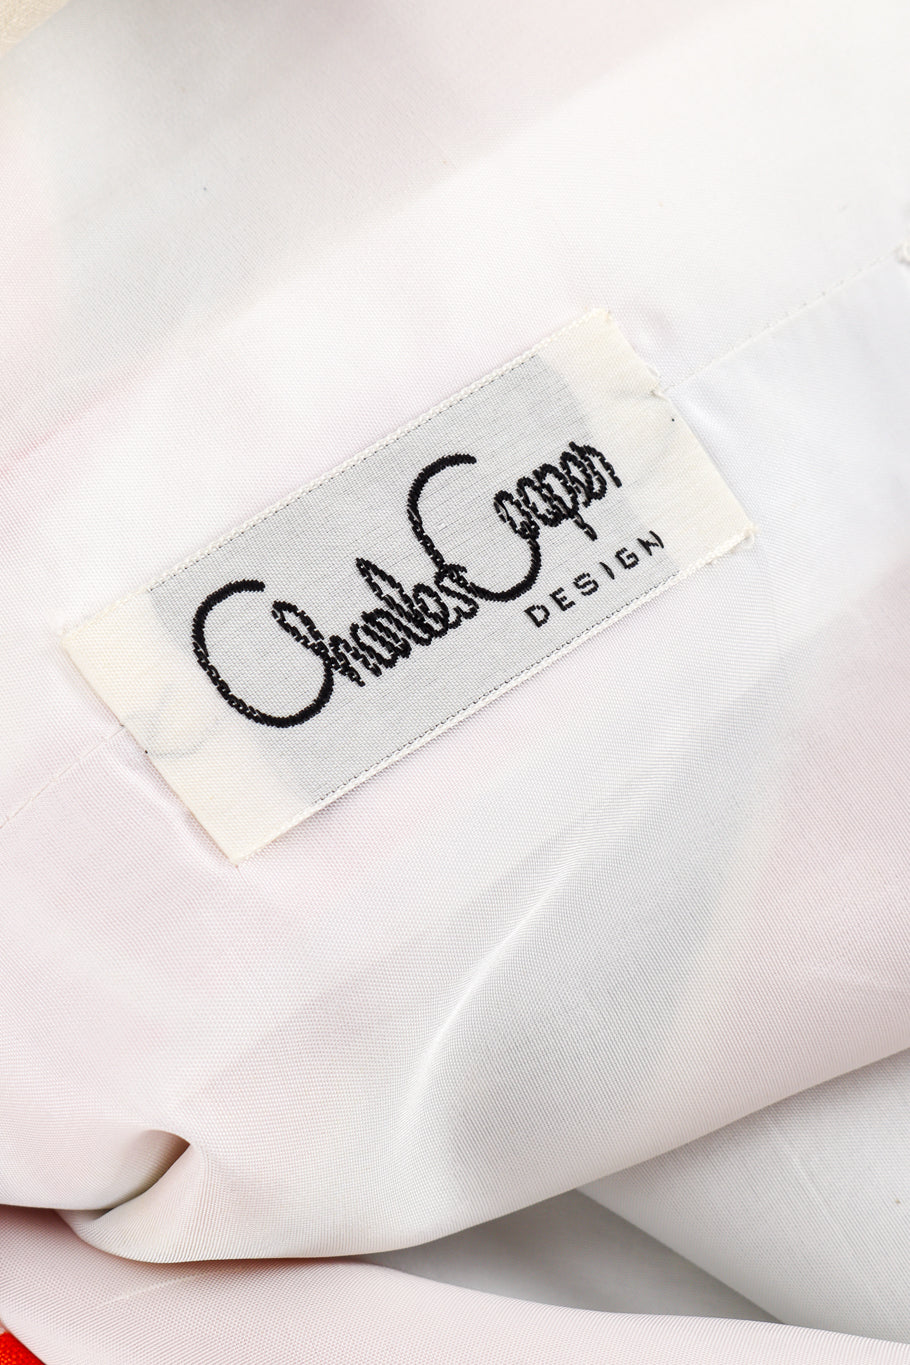 Vintage Charles Cooper Mod Flower Blouse, Pant & Sash Set signature label @recess la